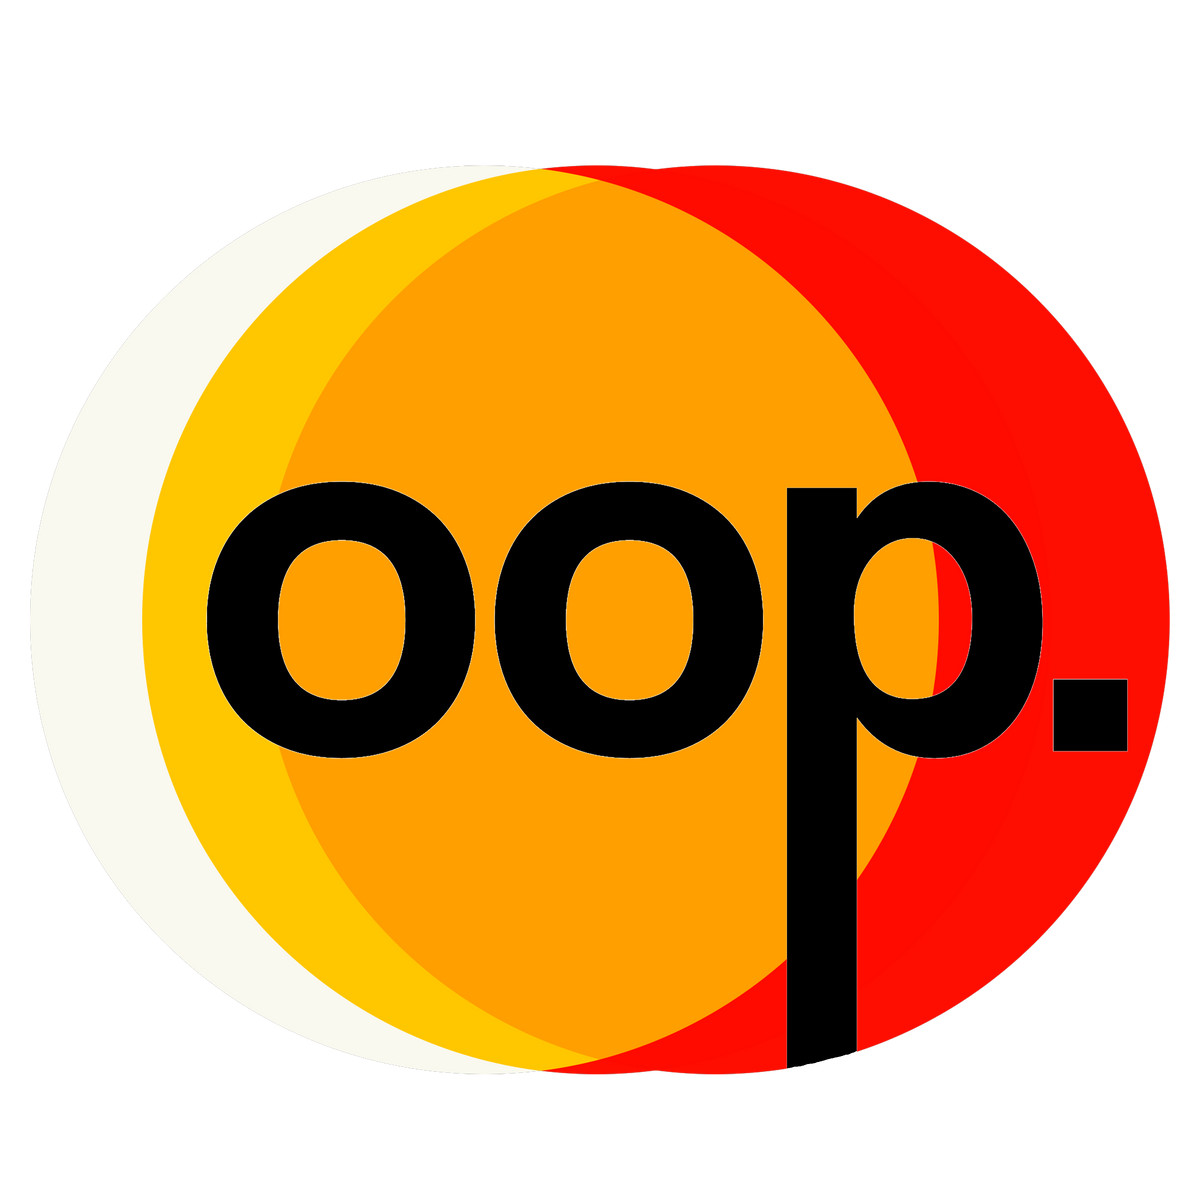 OOP. Trucker Cap (black text)